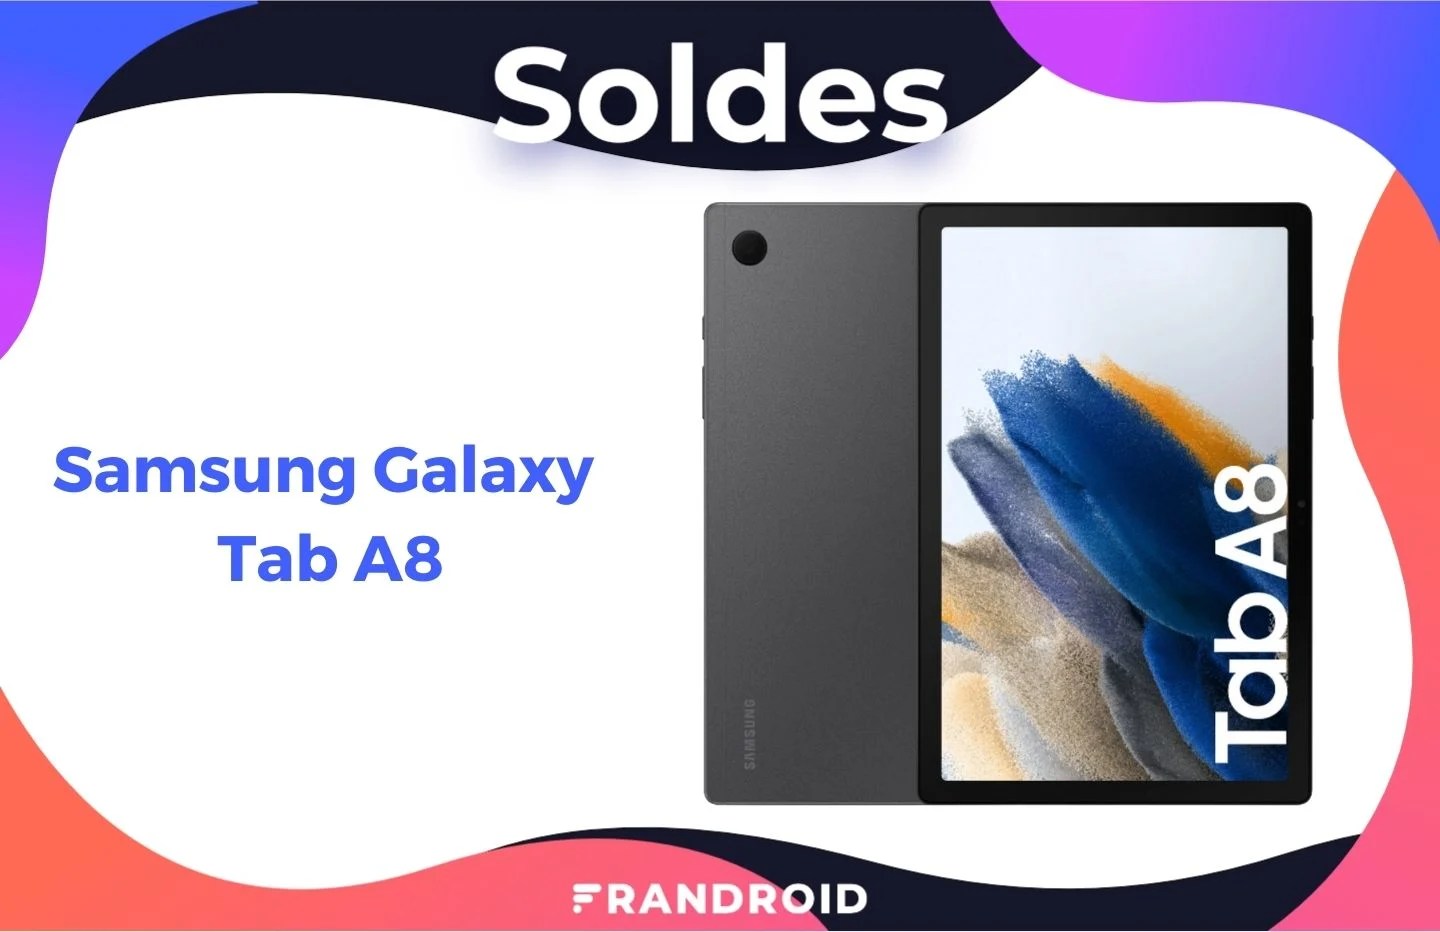 La nouvelle tablette Samsung Galaxy Tab A8 est déjà en promotion pour les soldes